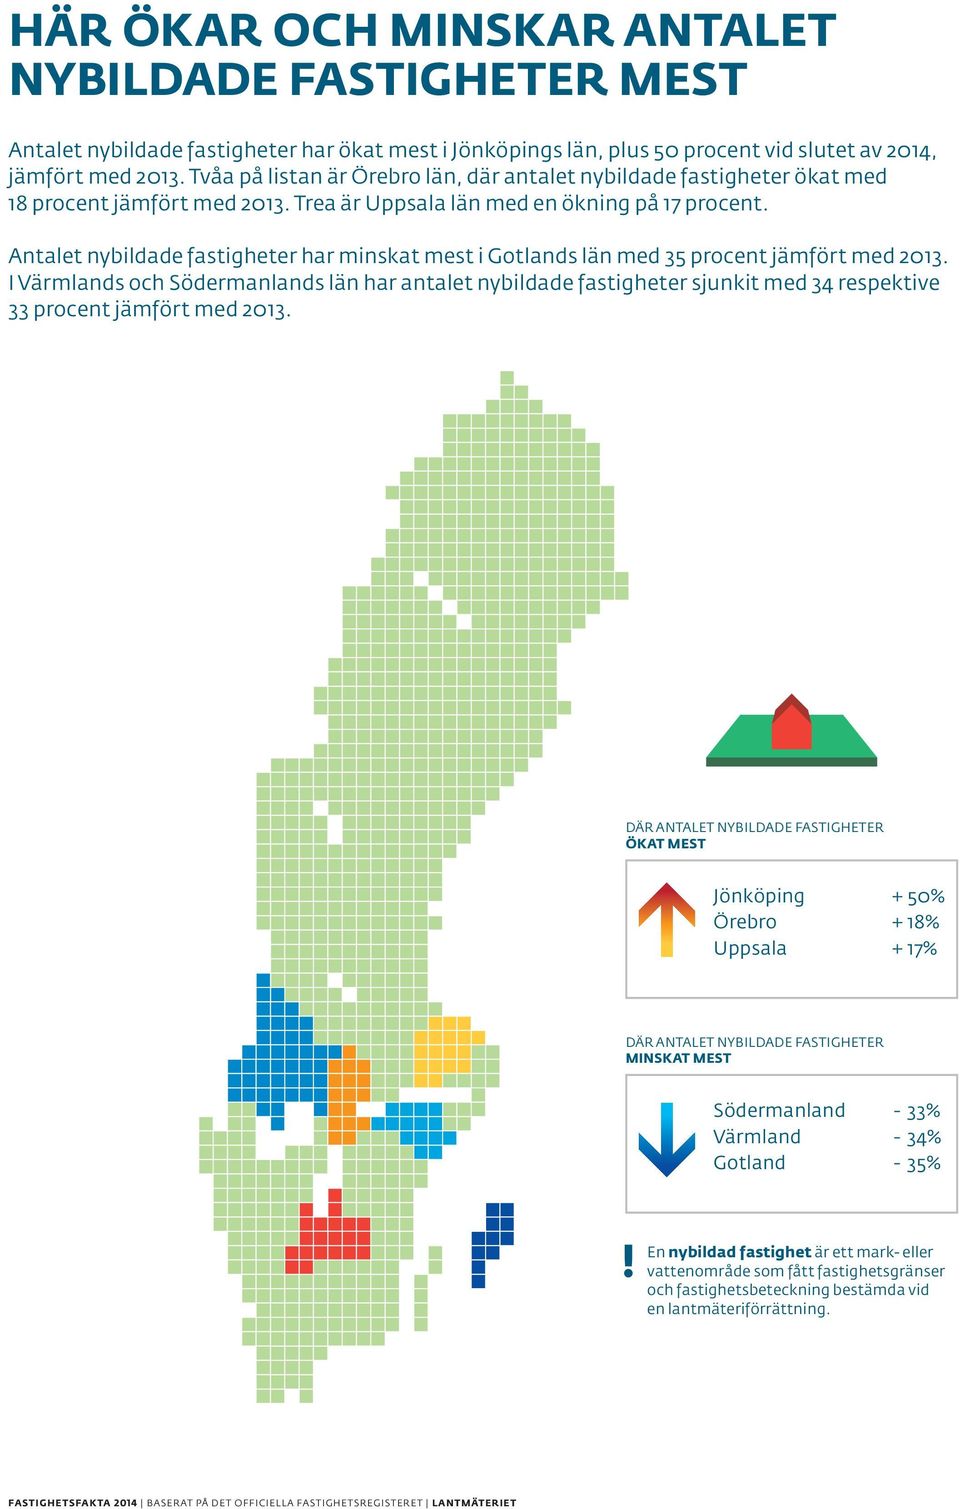 och minst Antalet nybildade fastigheter har minskat mest i Gotlands län med 35 procent jämfört med 2013.